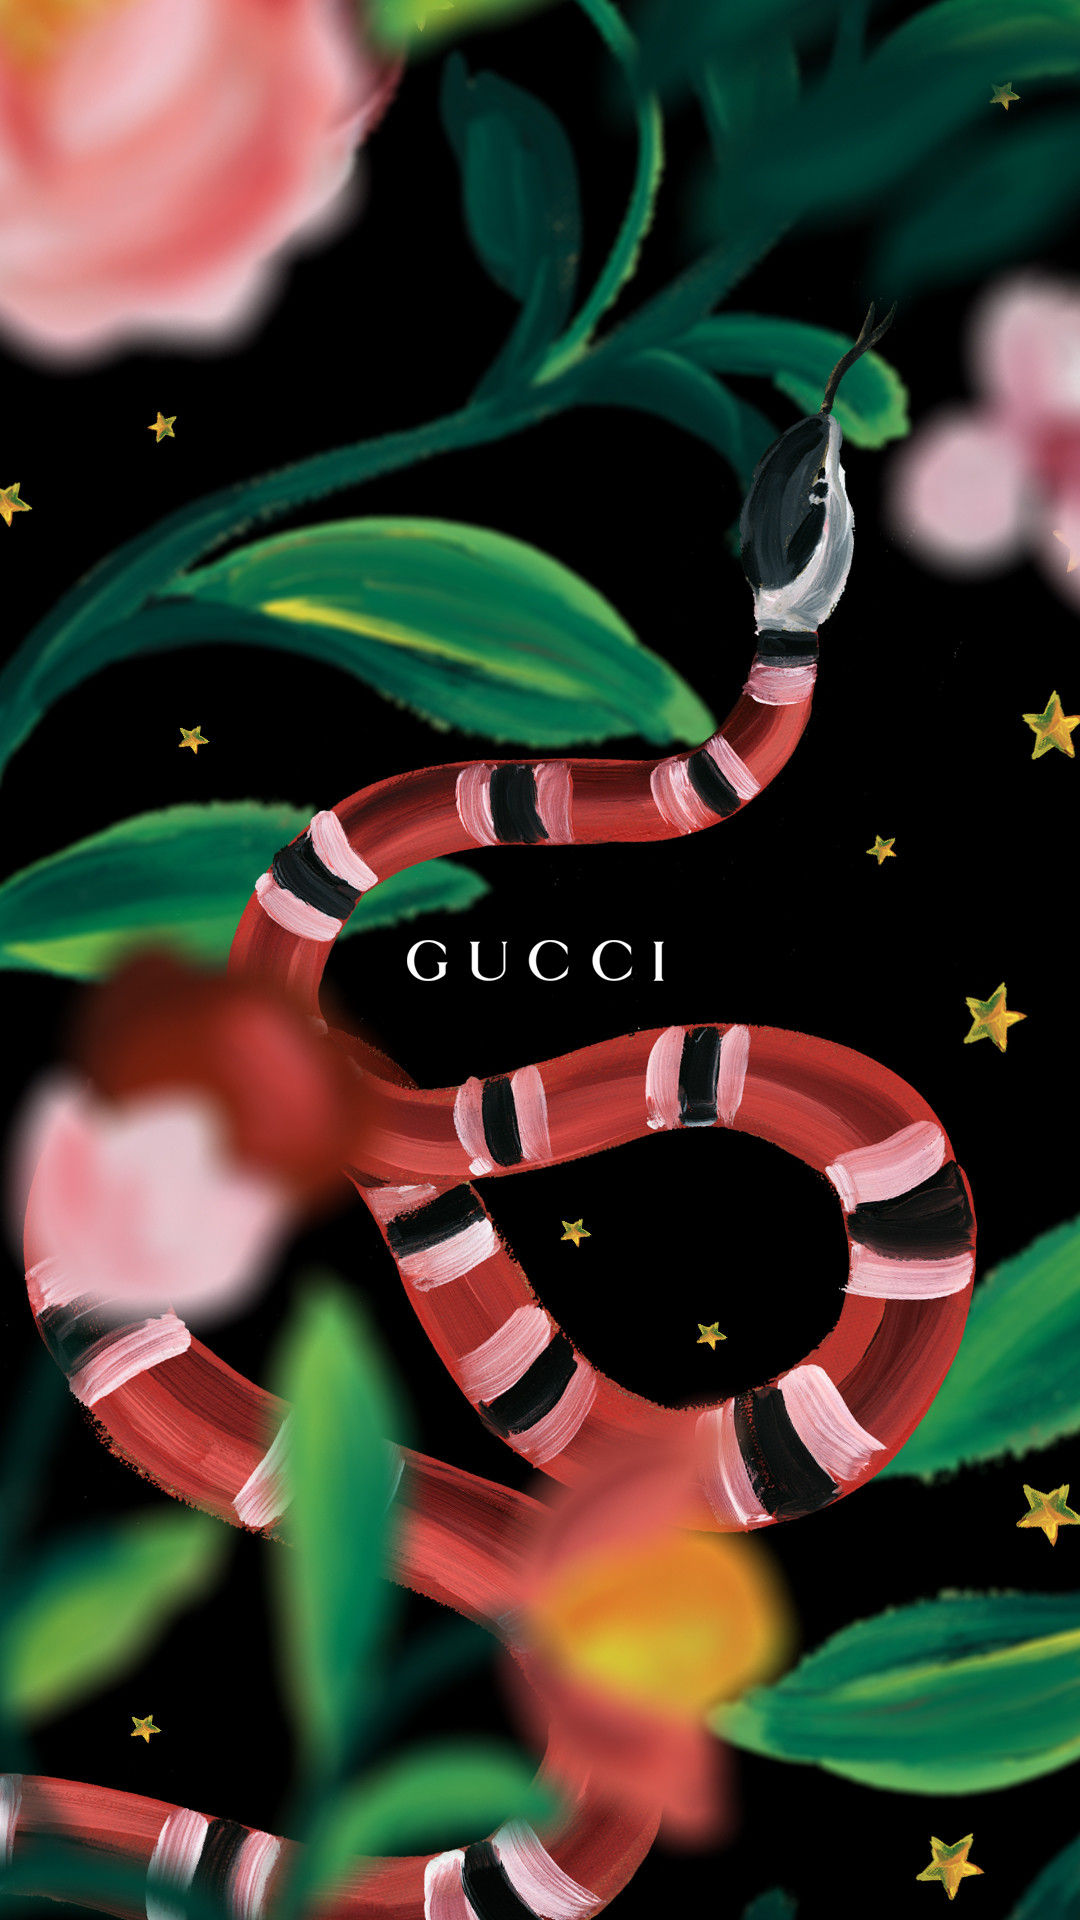 Gucci ヘビ ブランドのiphone壁紙 Iphone11 スマホ壁紙 待受画像